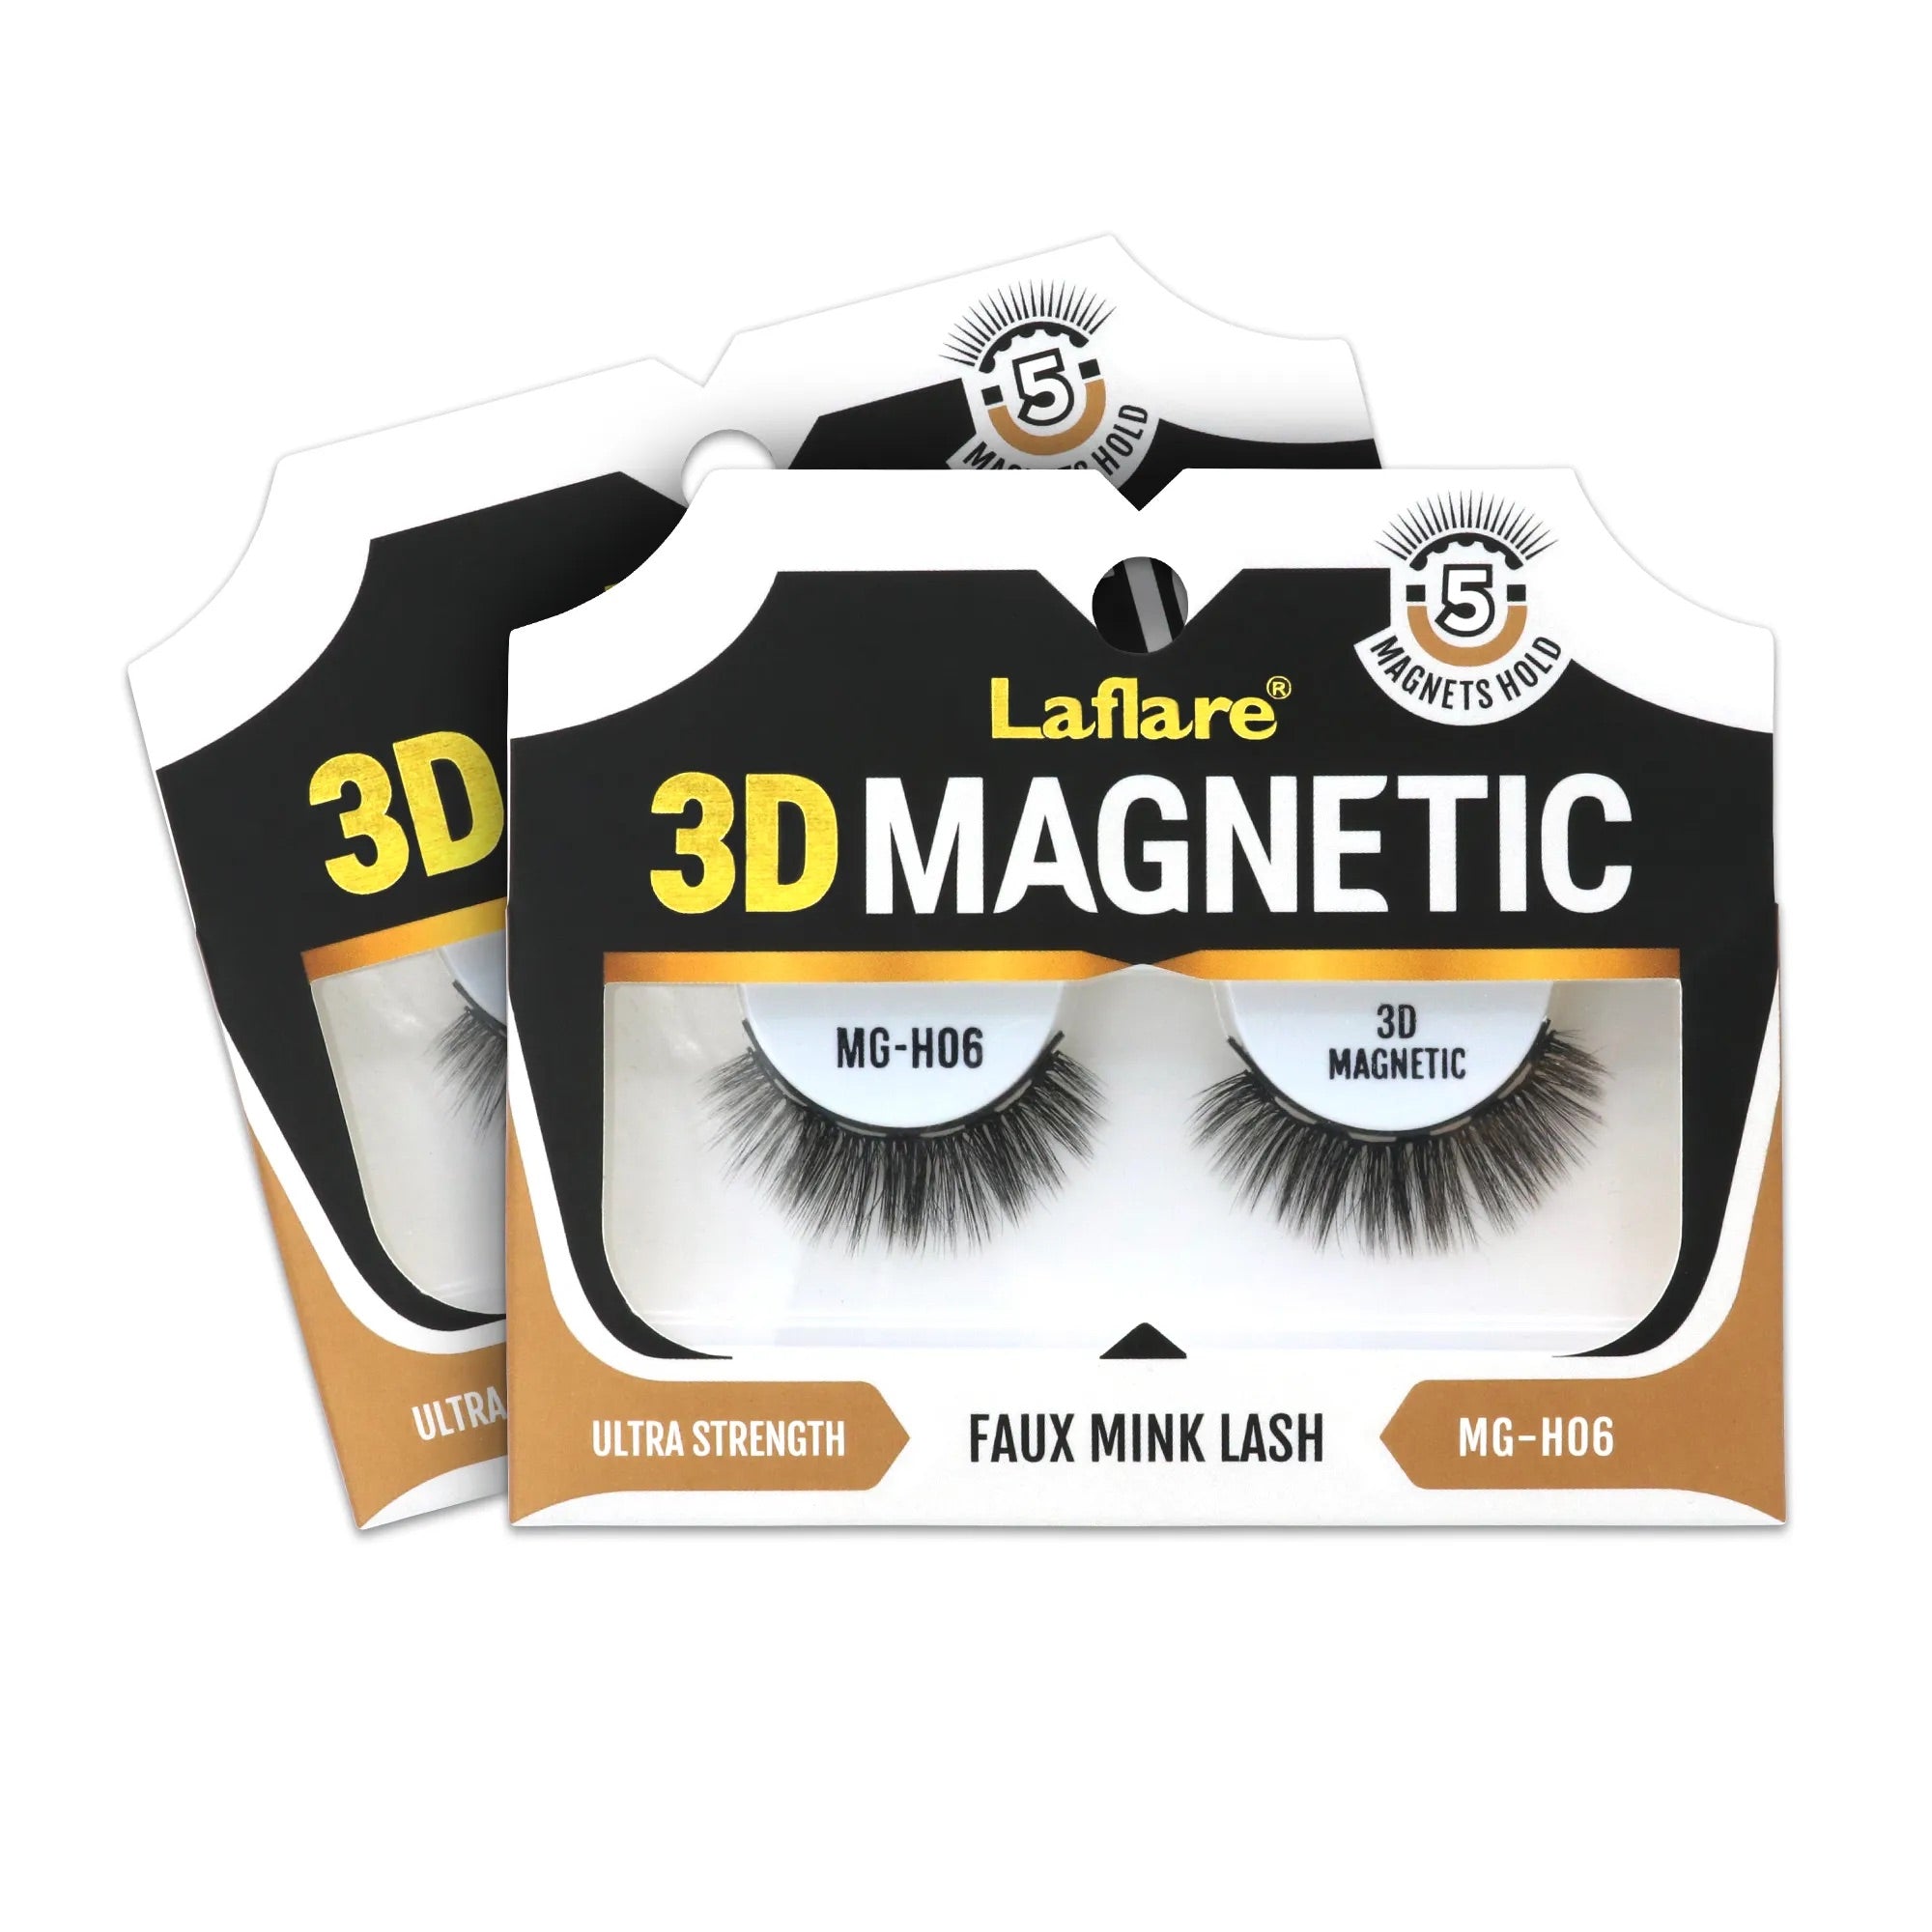 Laflare- 3D Magnetic Faux Mink Lash